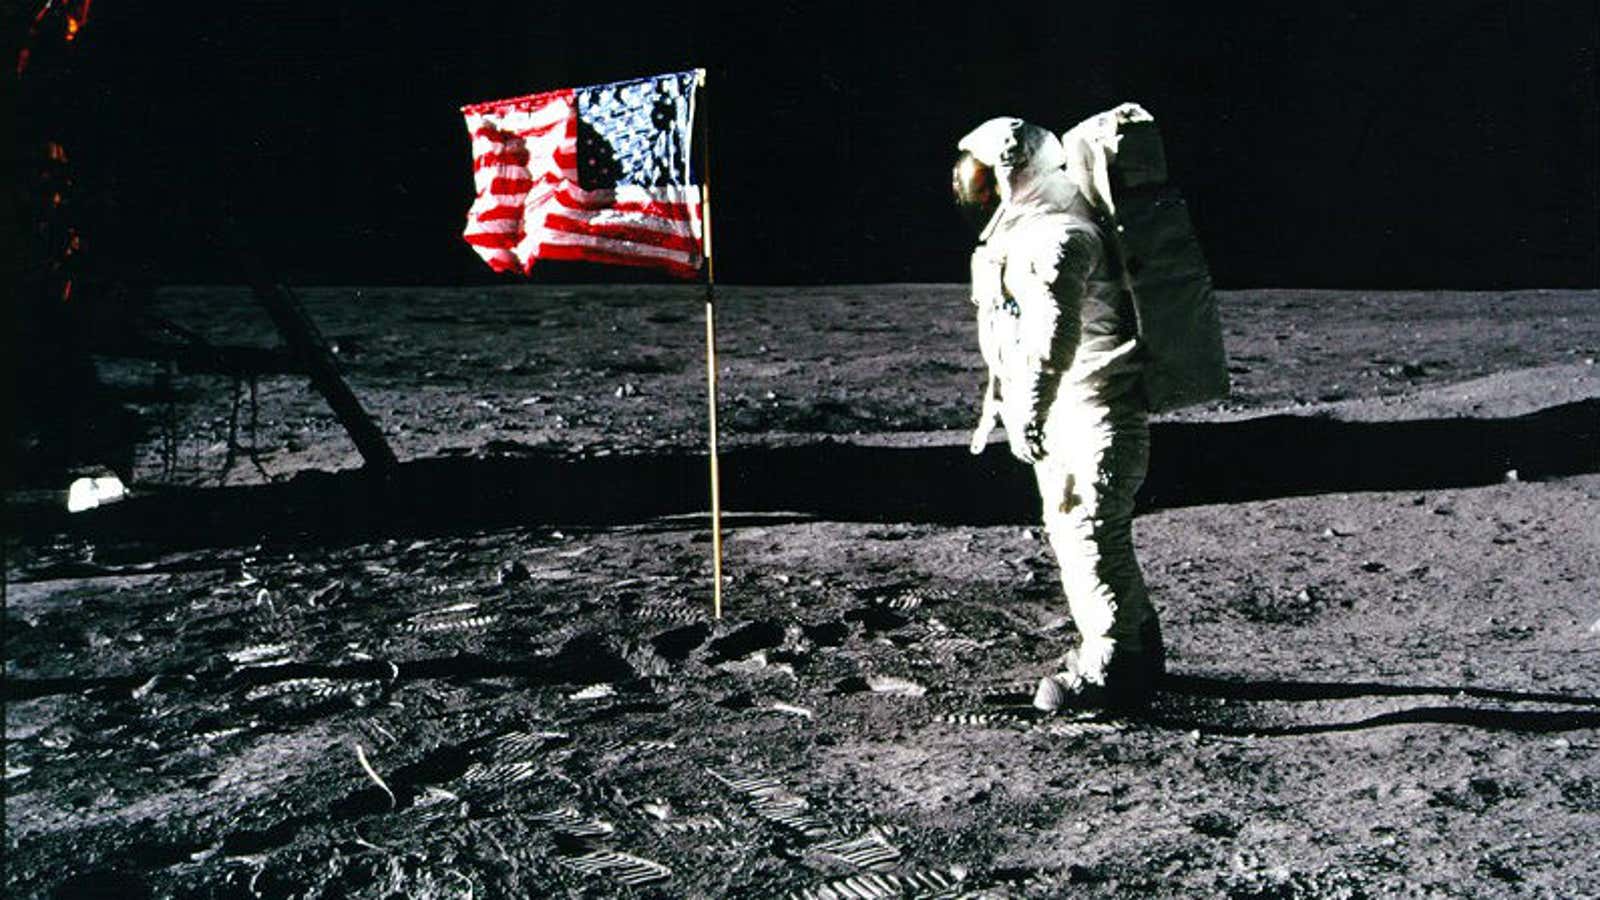 Армстронг Луна 1969. First land on the moon